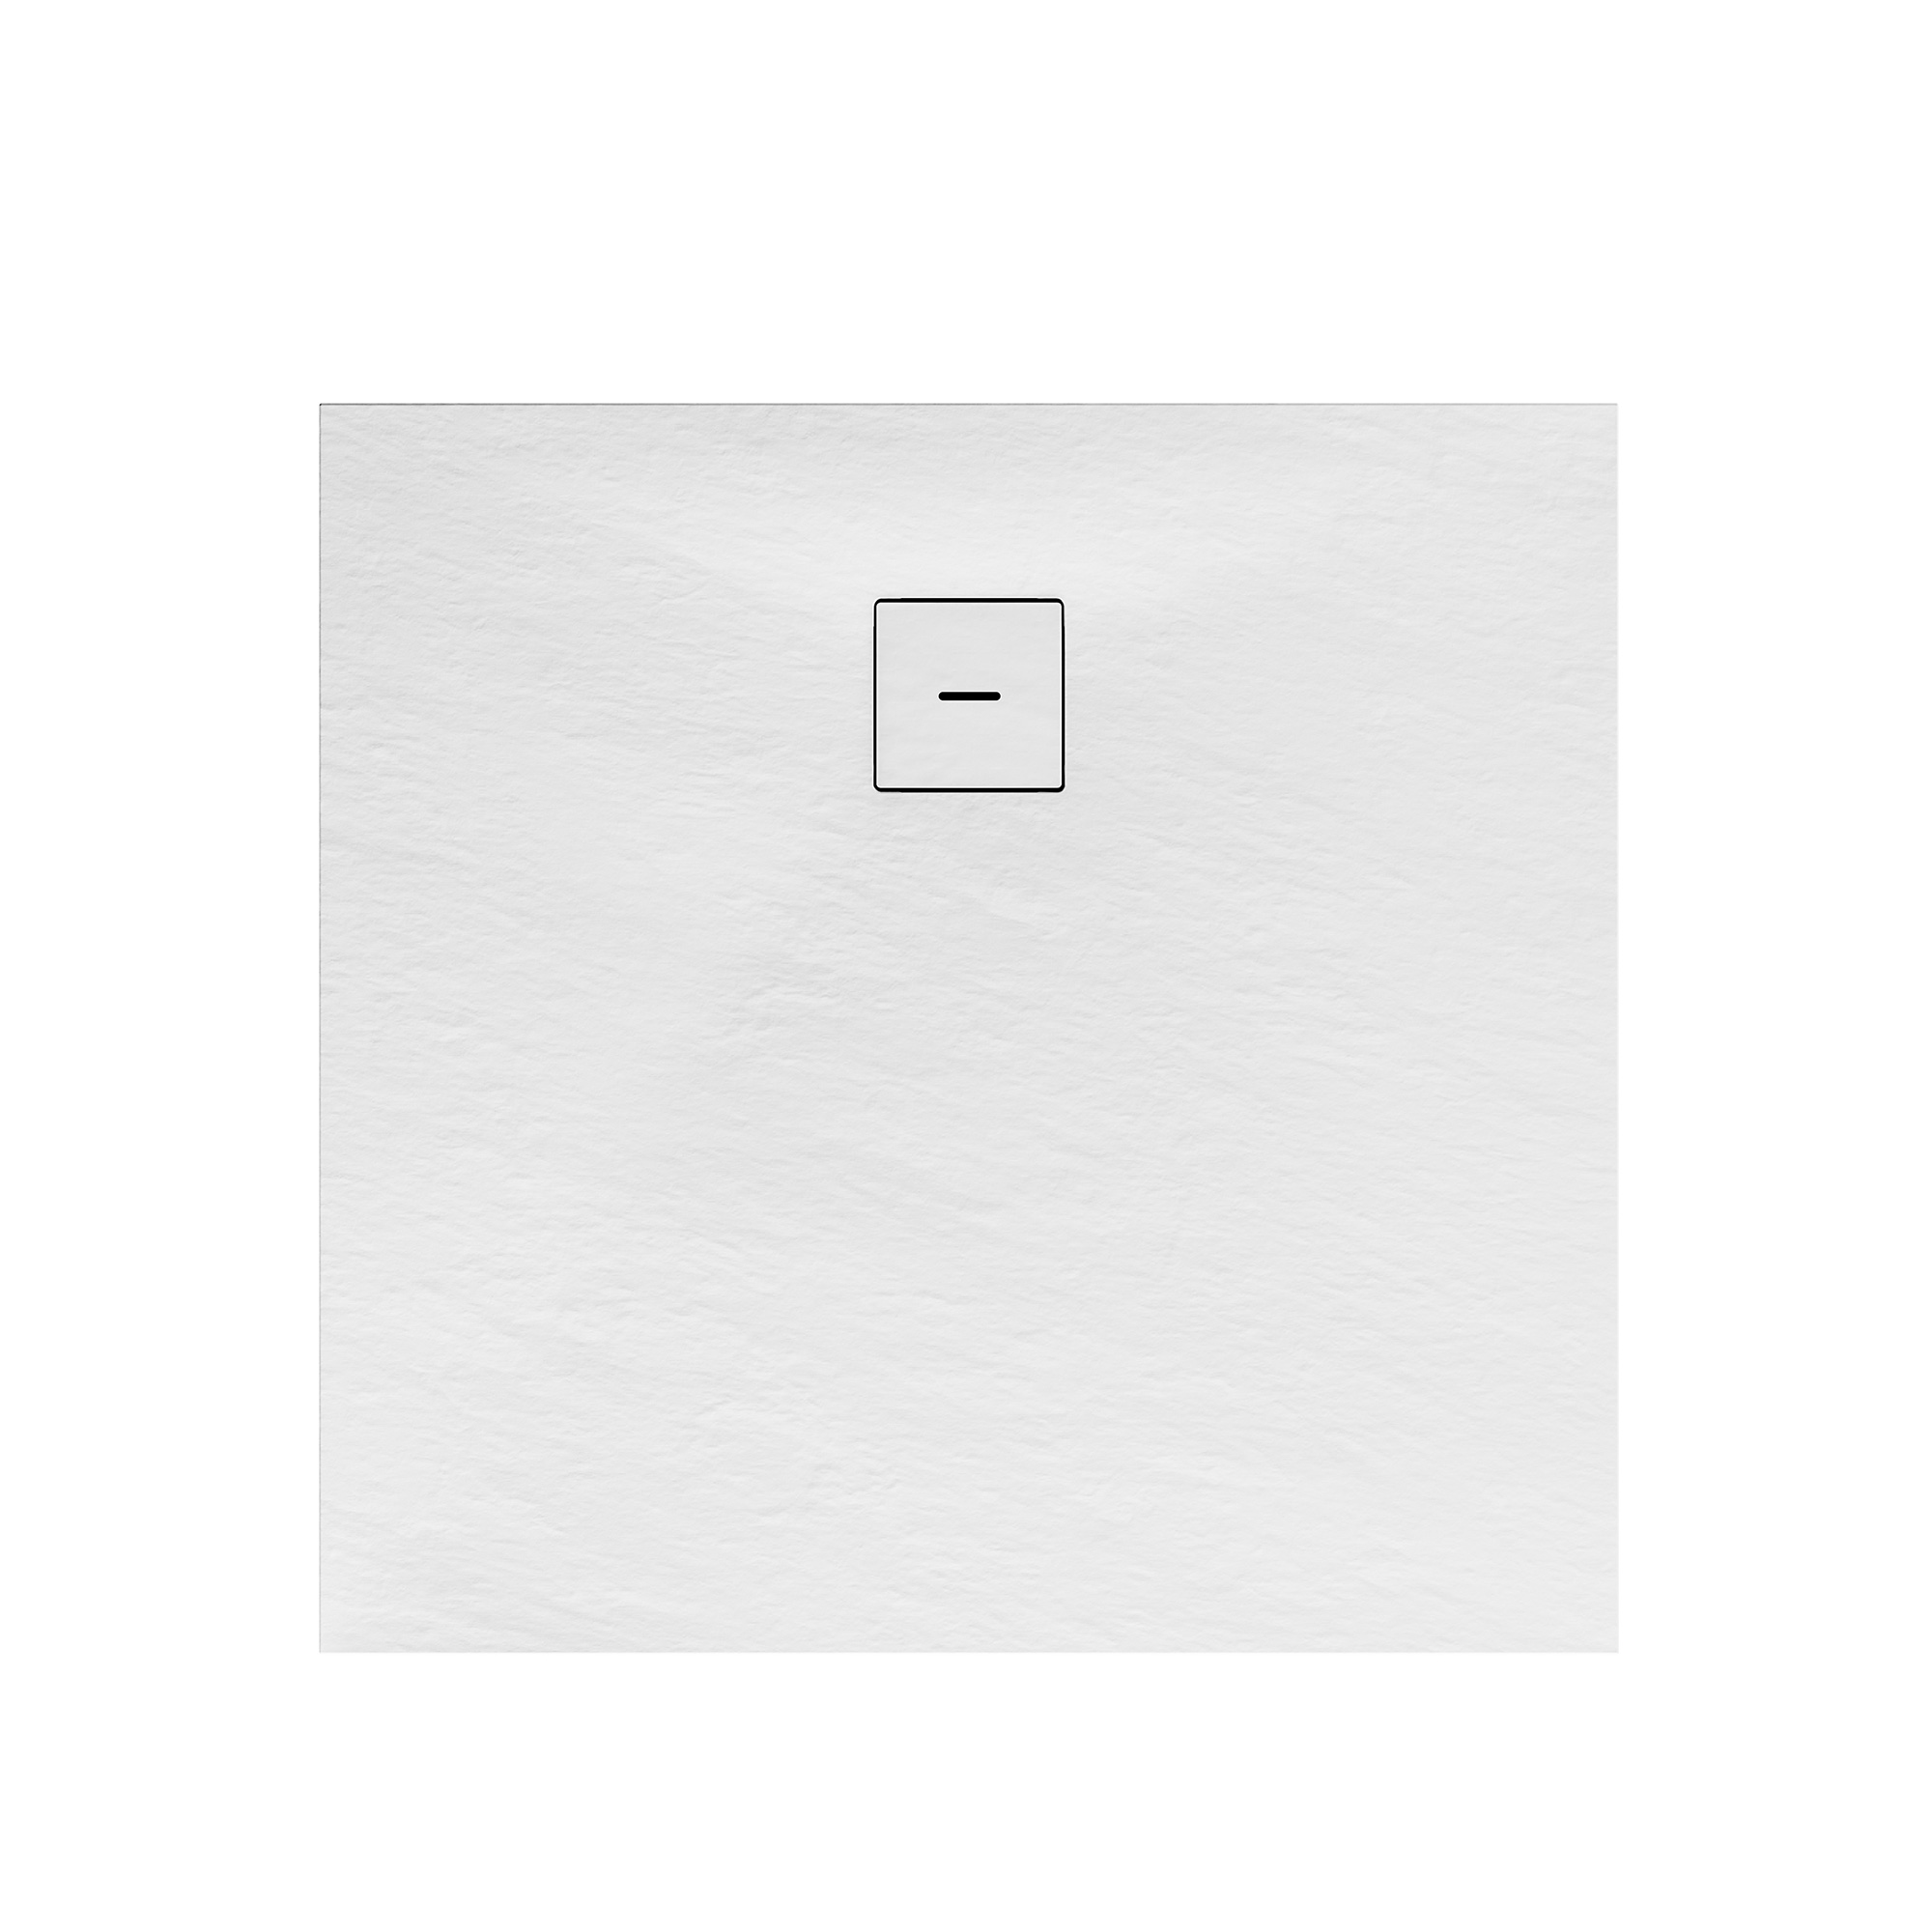 Duschwanne, Mineralguss, flach, weiß, quadratisch, 90 x 90 x 4 cm + product picture